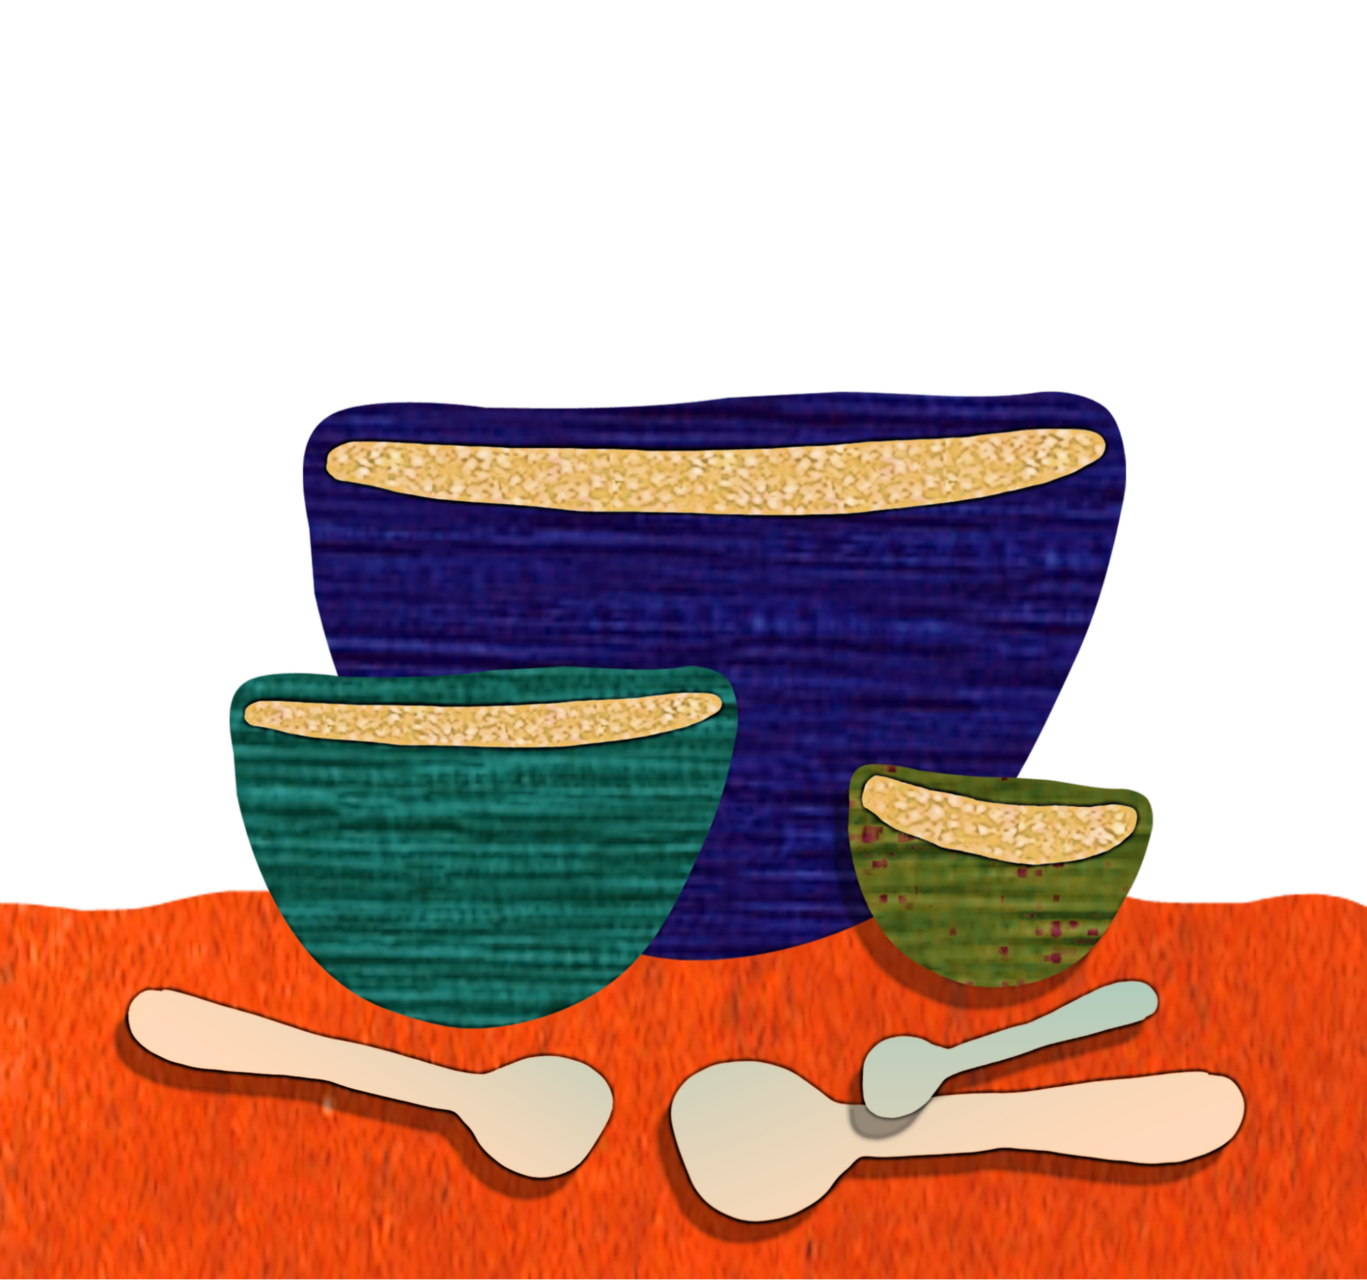 Ilustración de tres platos de cereal.